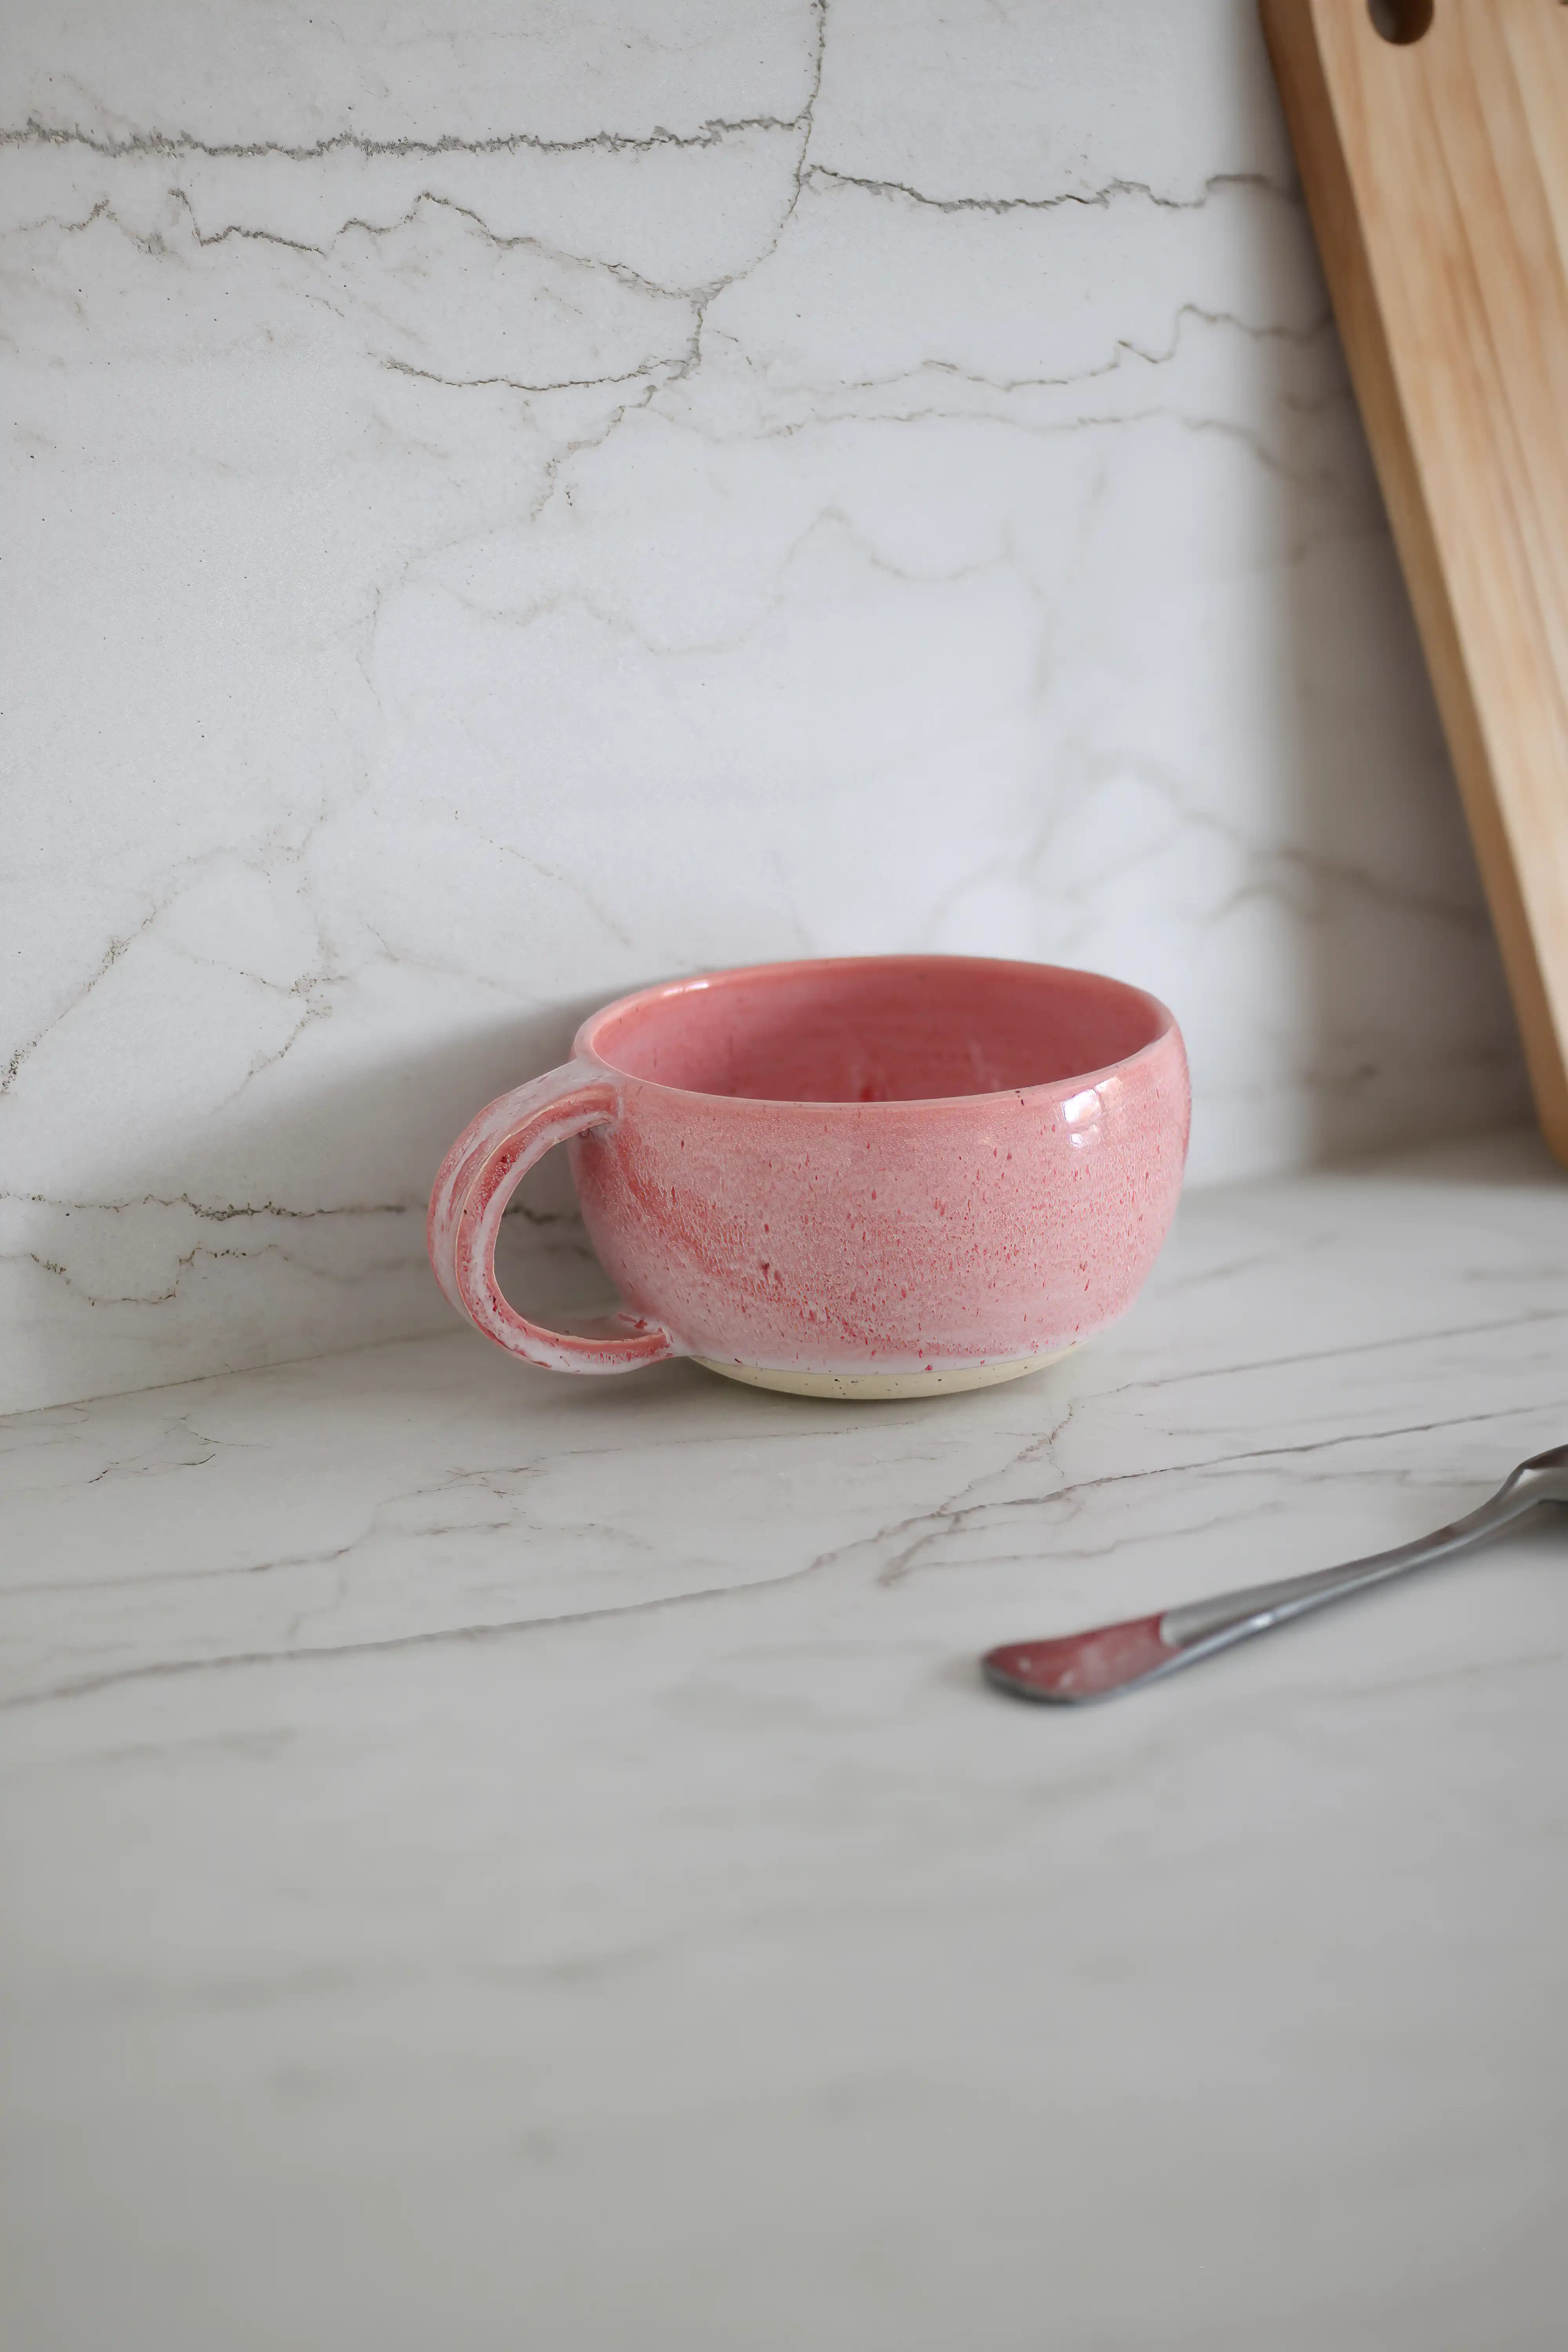 Tasse en céramique rose sur un plan de travail en Dekton blanc aux veines grises subtiles, à côté d'une planche à découper en bois et d'une cuillère en argent, intérieur signé Sarah Brown Design